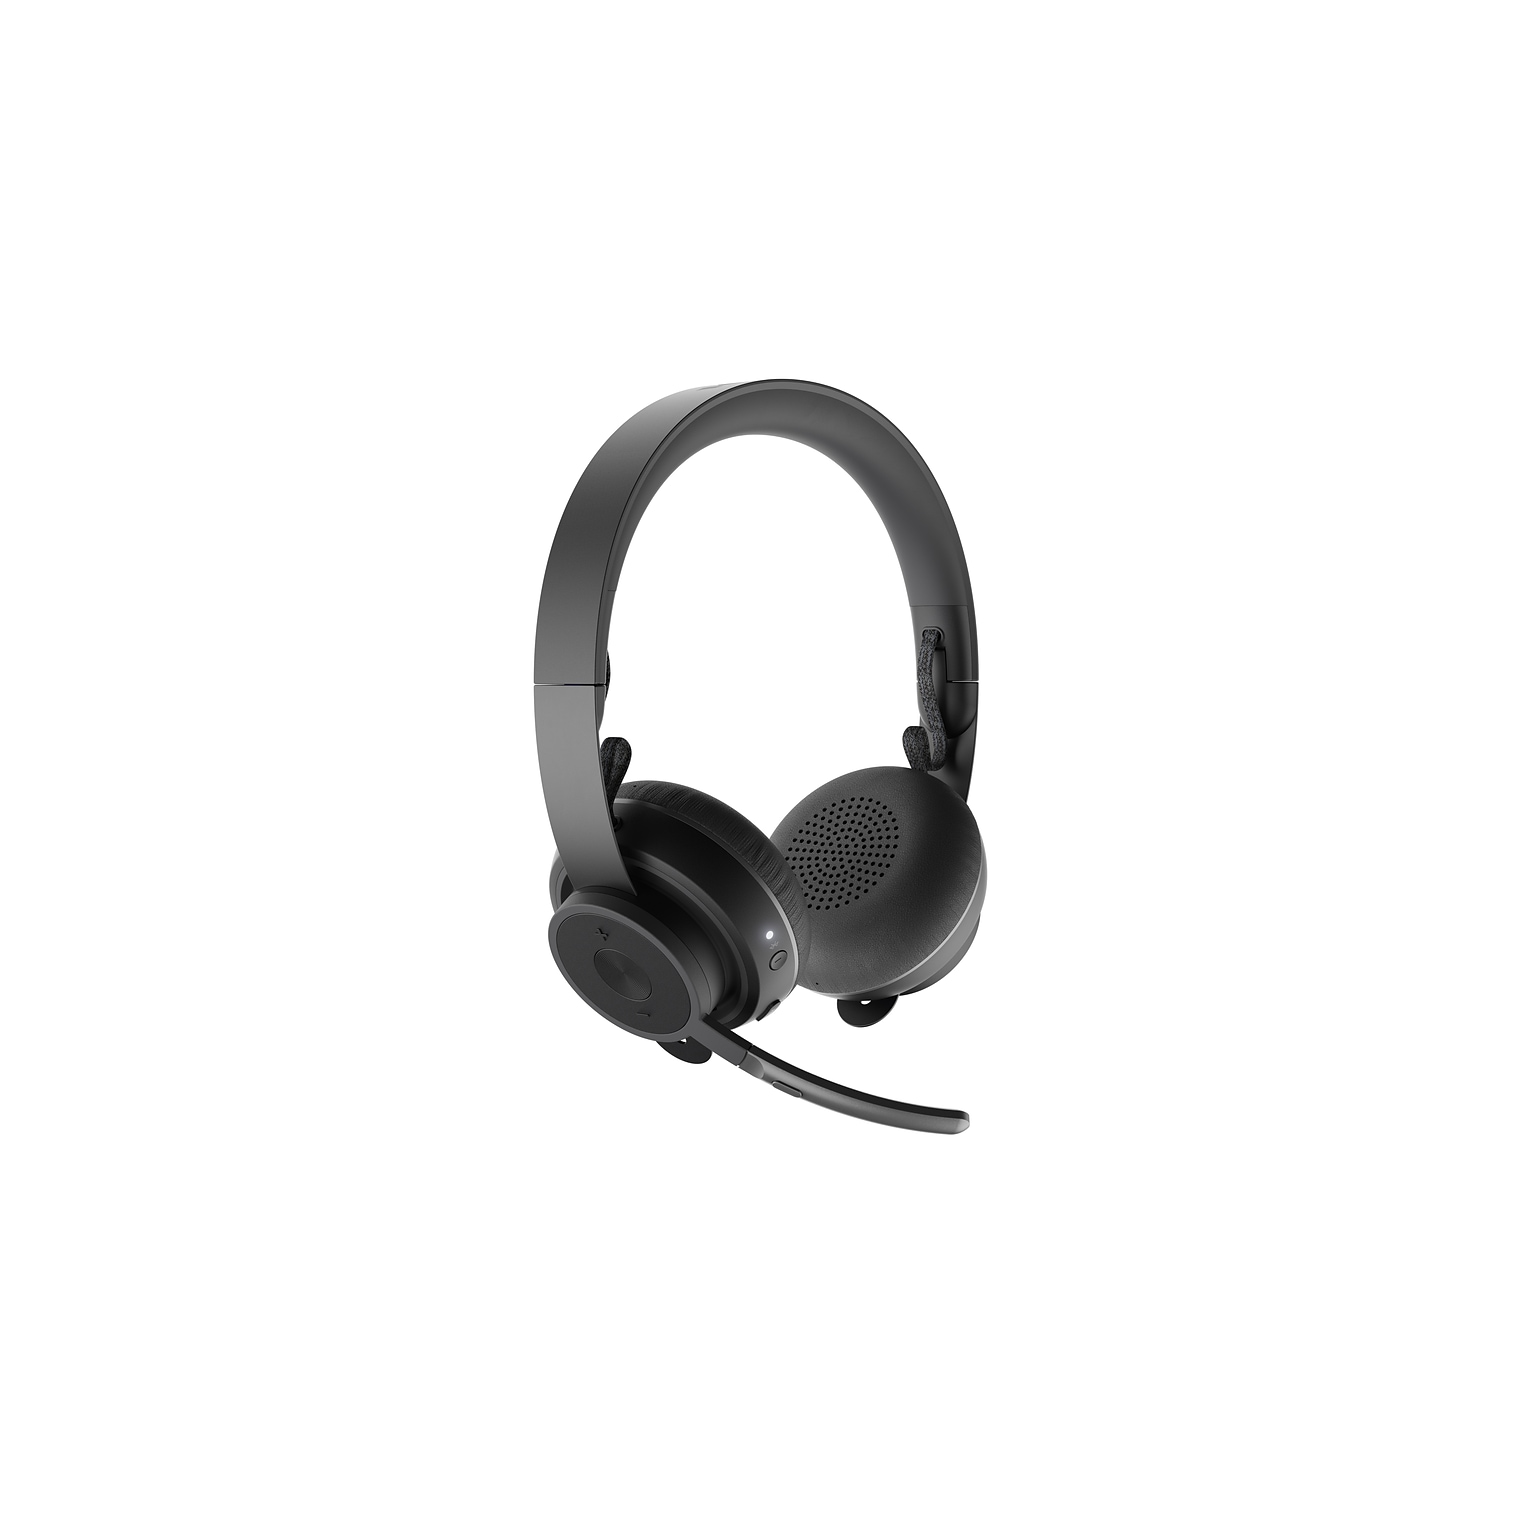 Logitech Zone Wireless Headset, Black (981-000913)